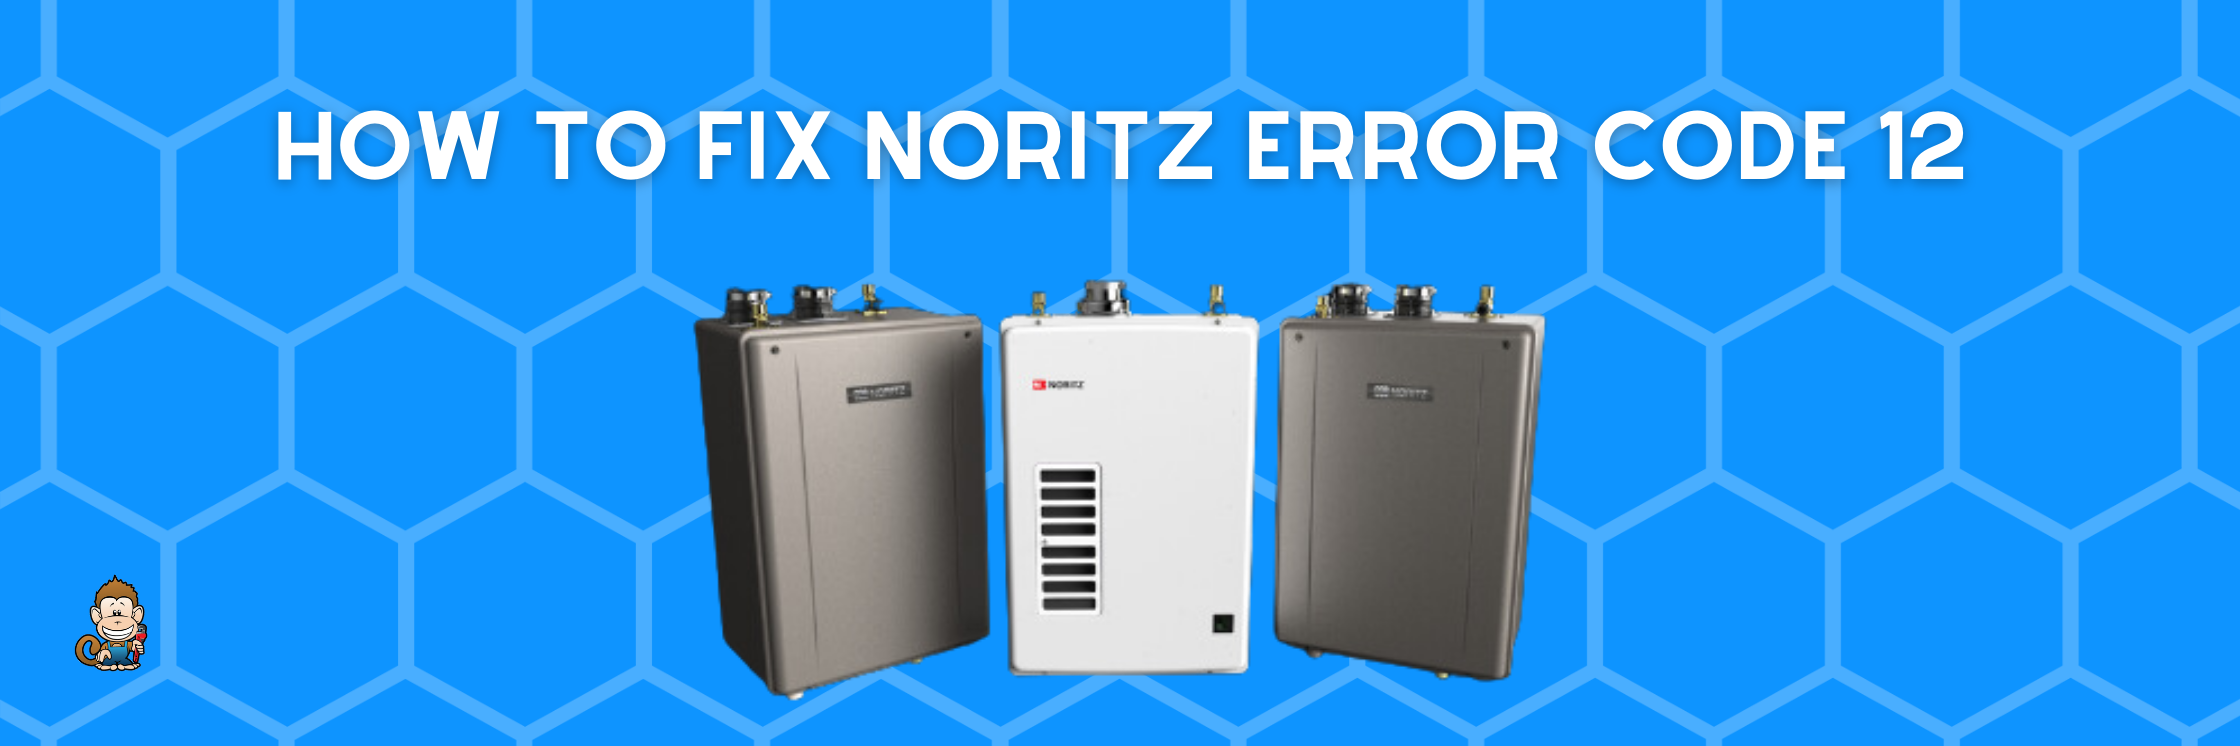 How to Fix Noritz Error Code 12